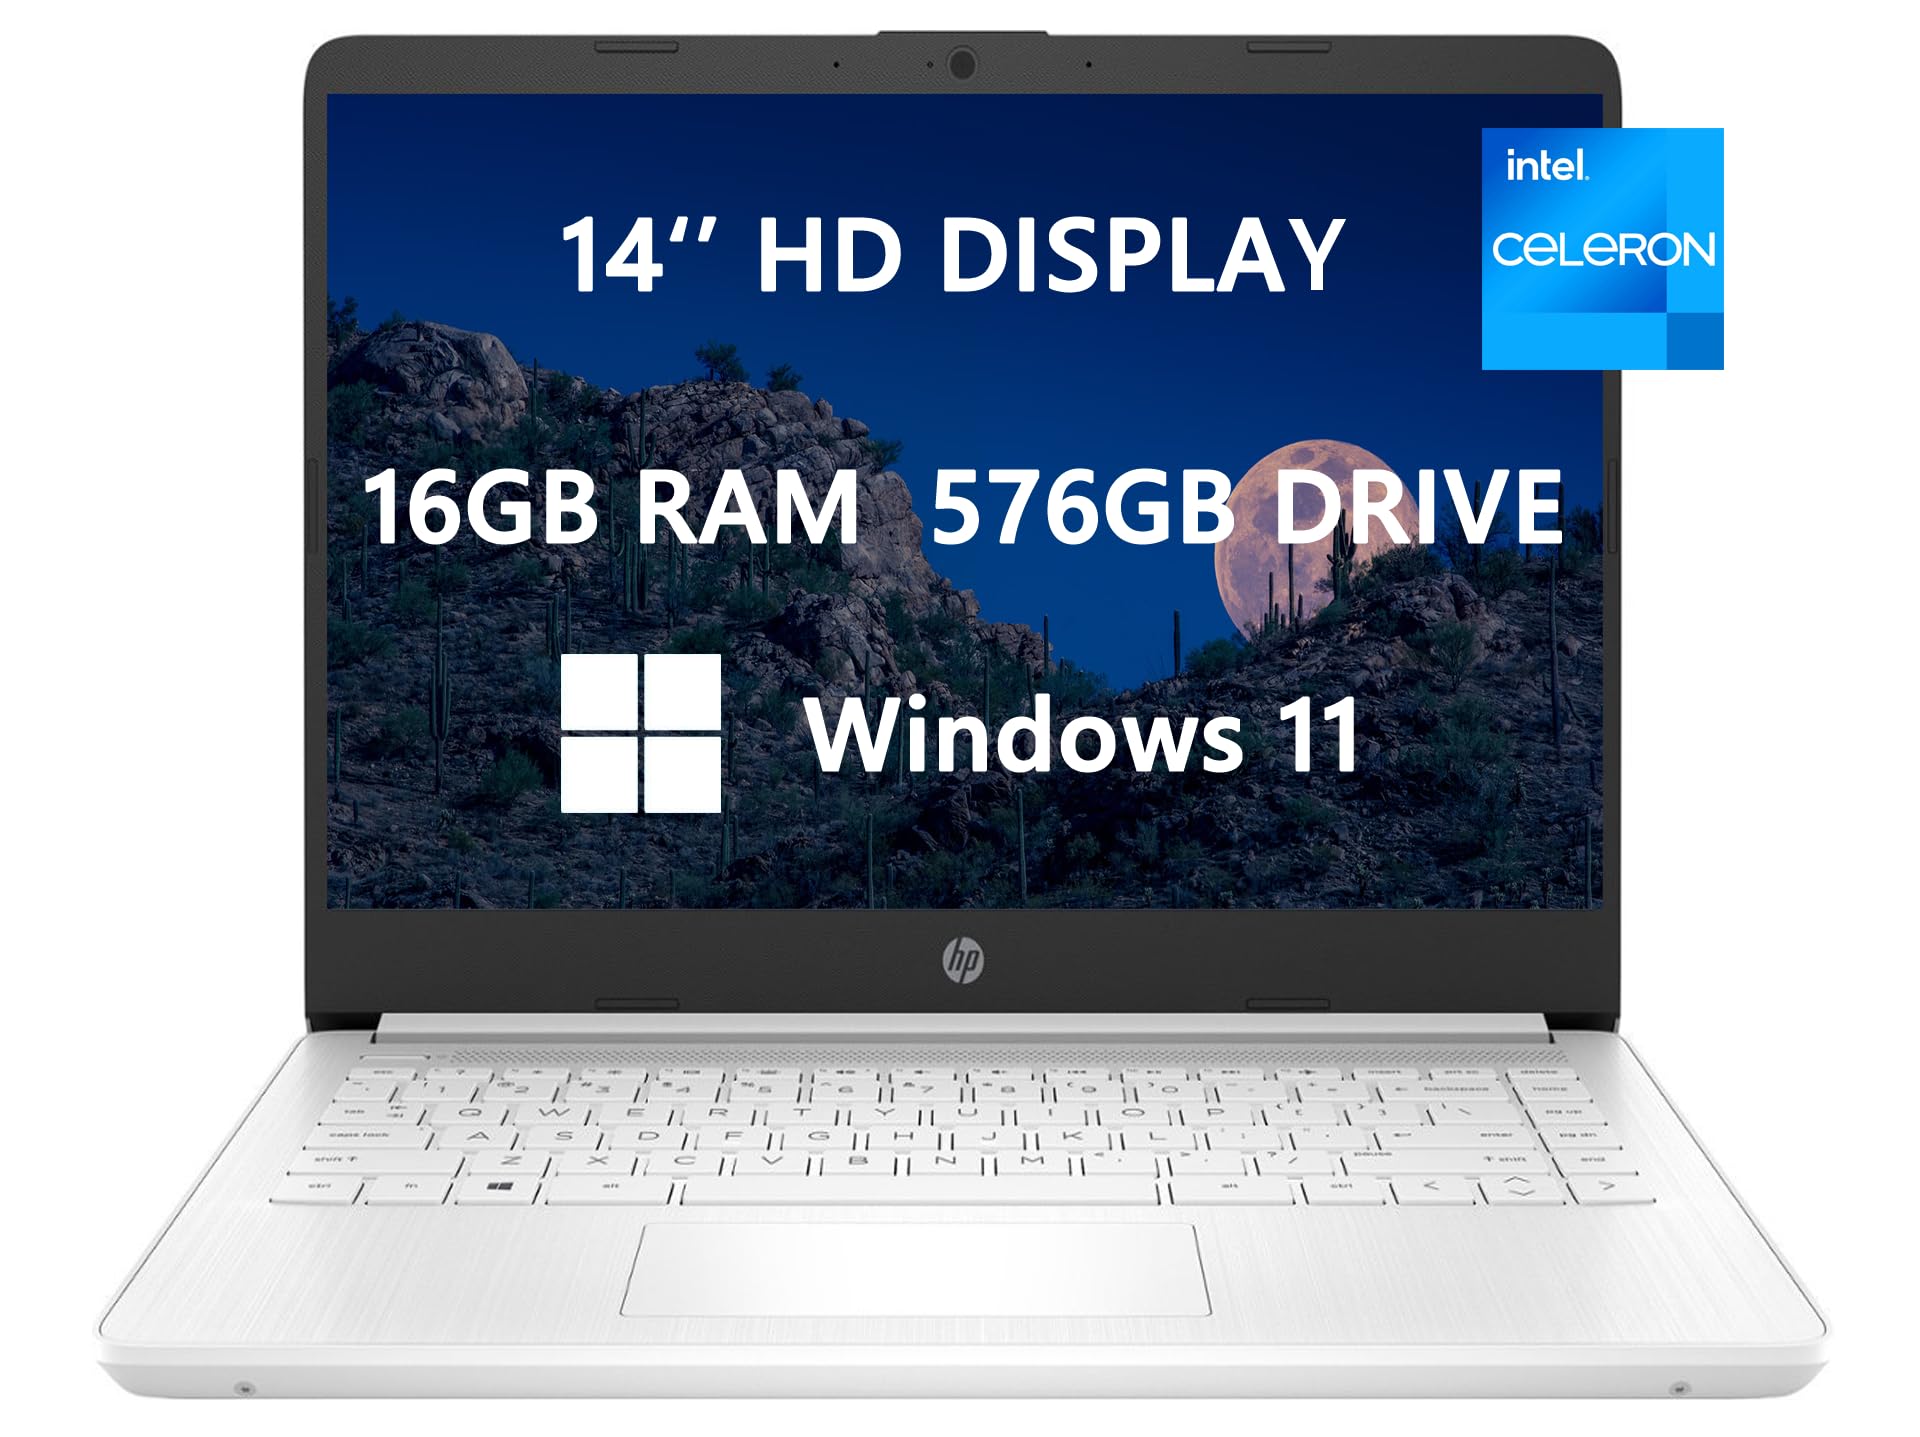 HP Laptop de 14 HD, actualización 2023, Intel Celeron N4120 (4 núcleos), 16 GB de RAM, 576 GB (64 GB SSD + tarjeta de 512 GB), cámara web, Bluetooth, USB-C, blanco, Windows 11, listo para la escuela y la empresa, cable HDMI ROKC